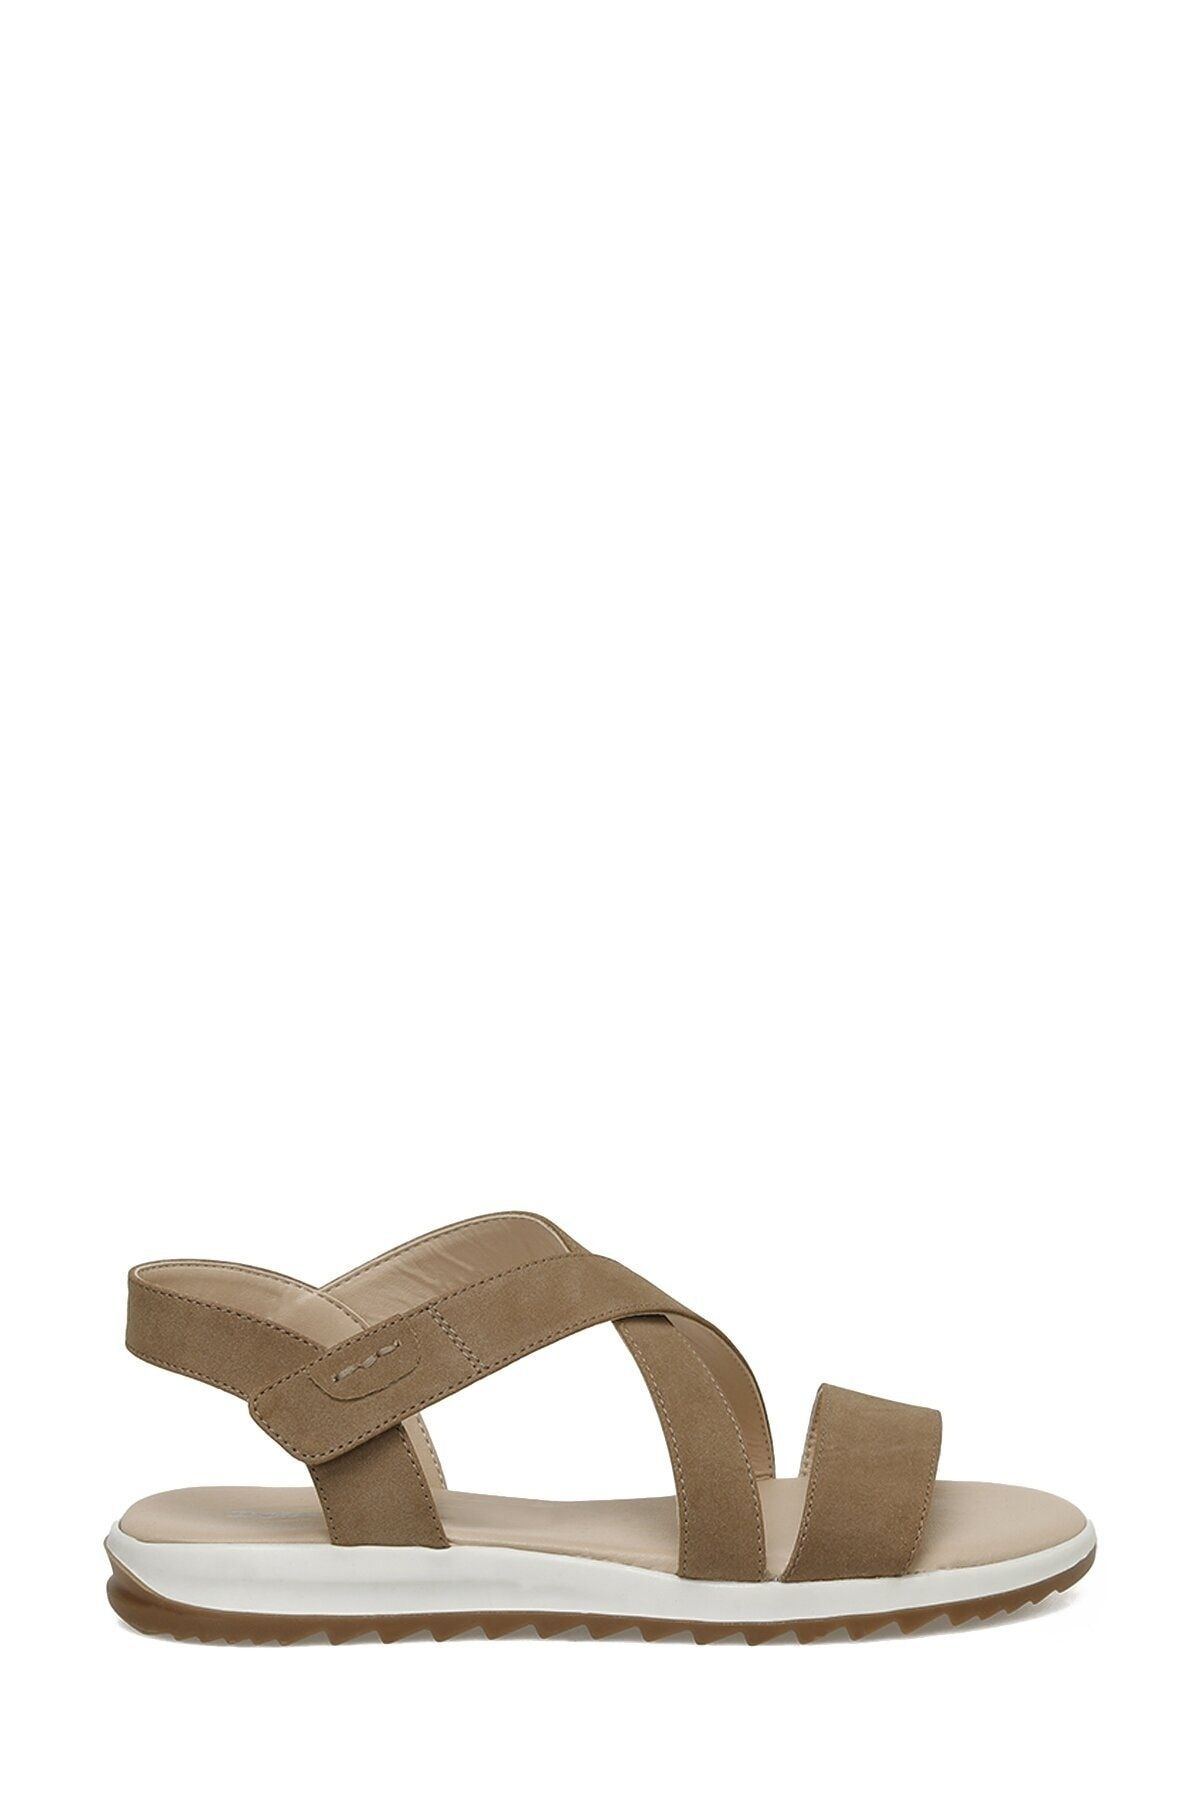 Polaris 321822.z 3fx Camel Kadın Spor Sandalet